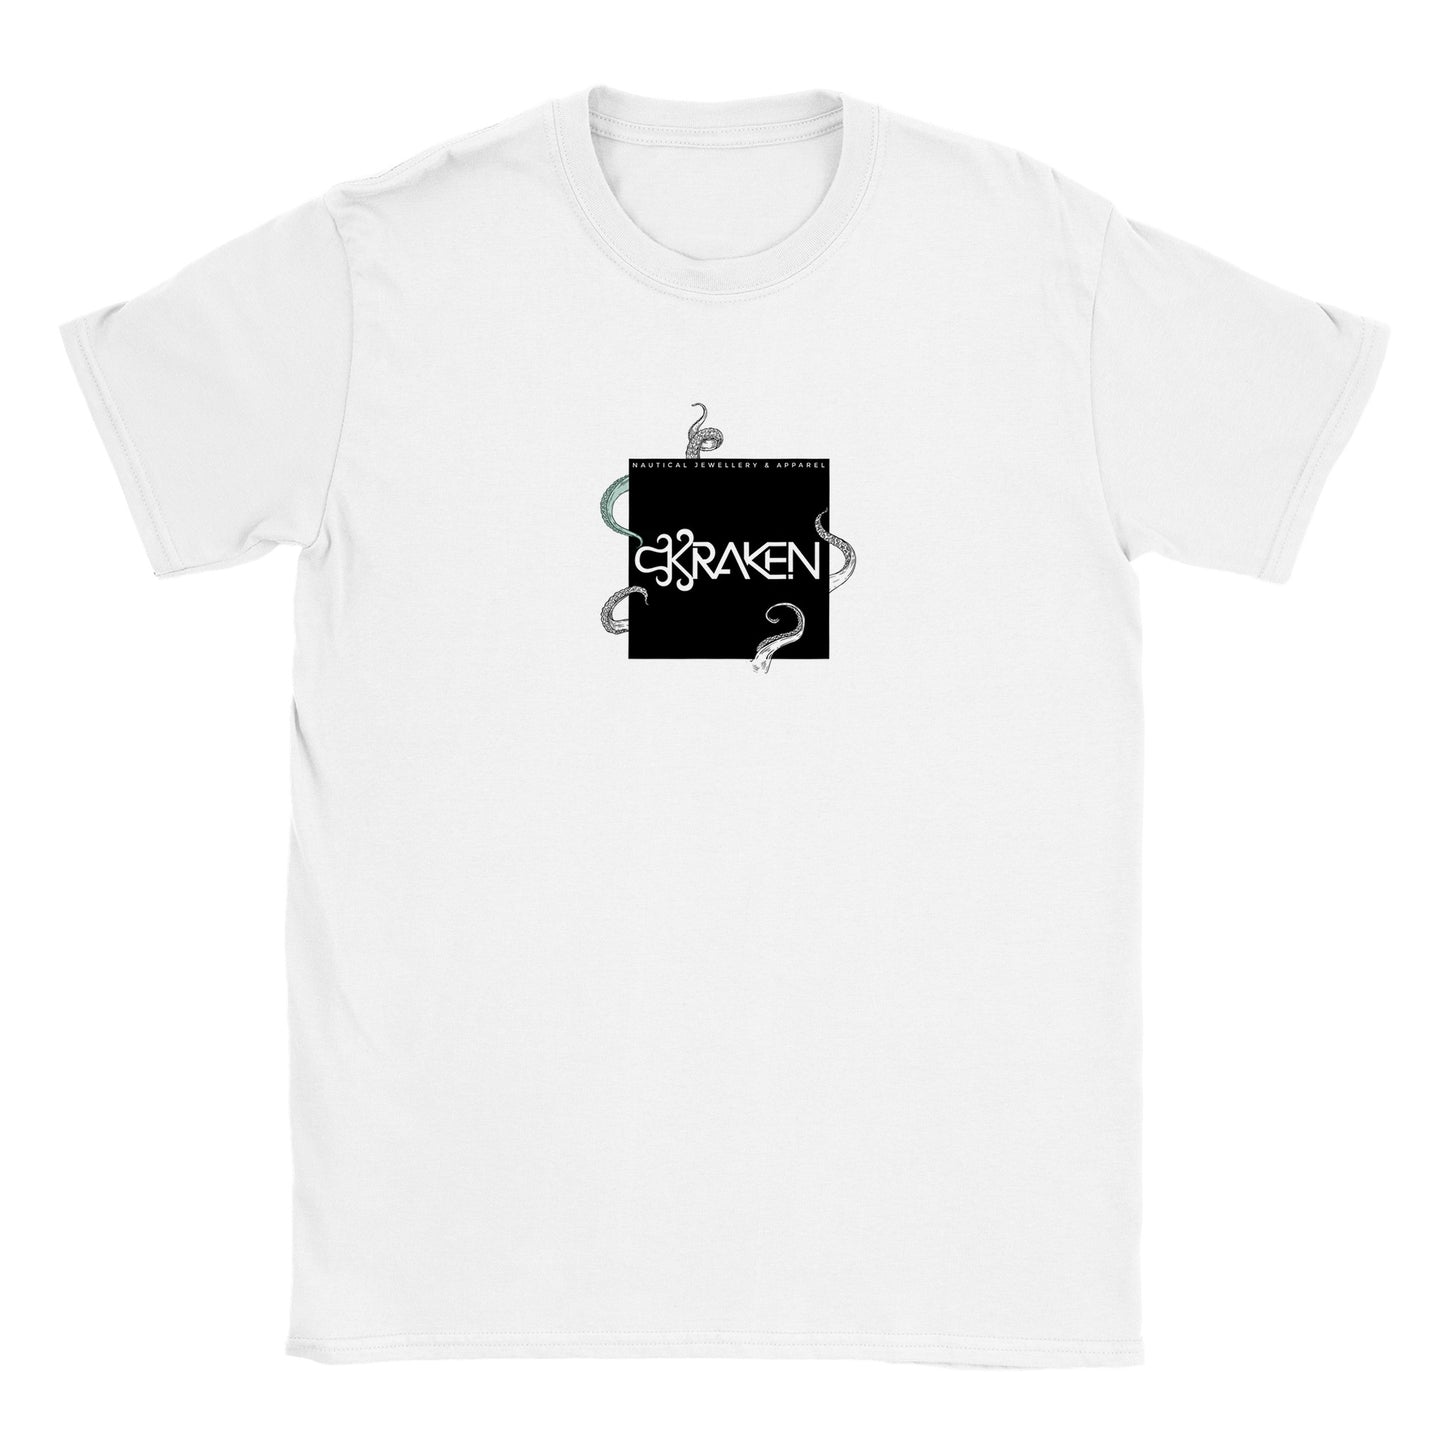 'Release the Kraken' T-shirt